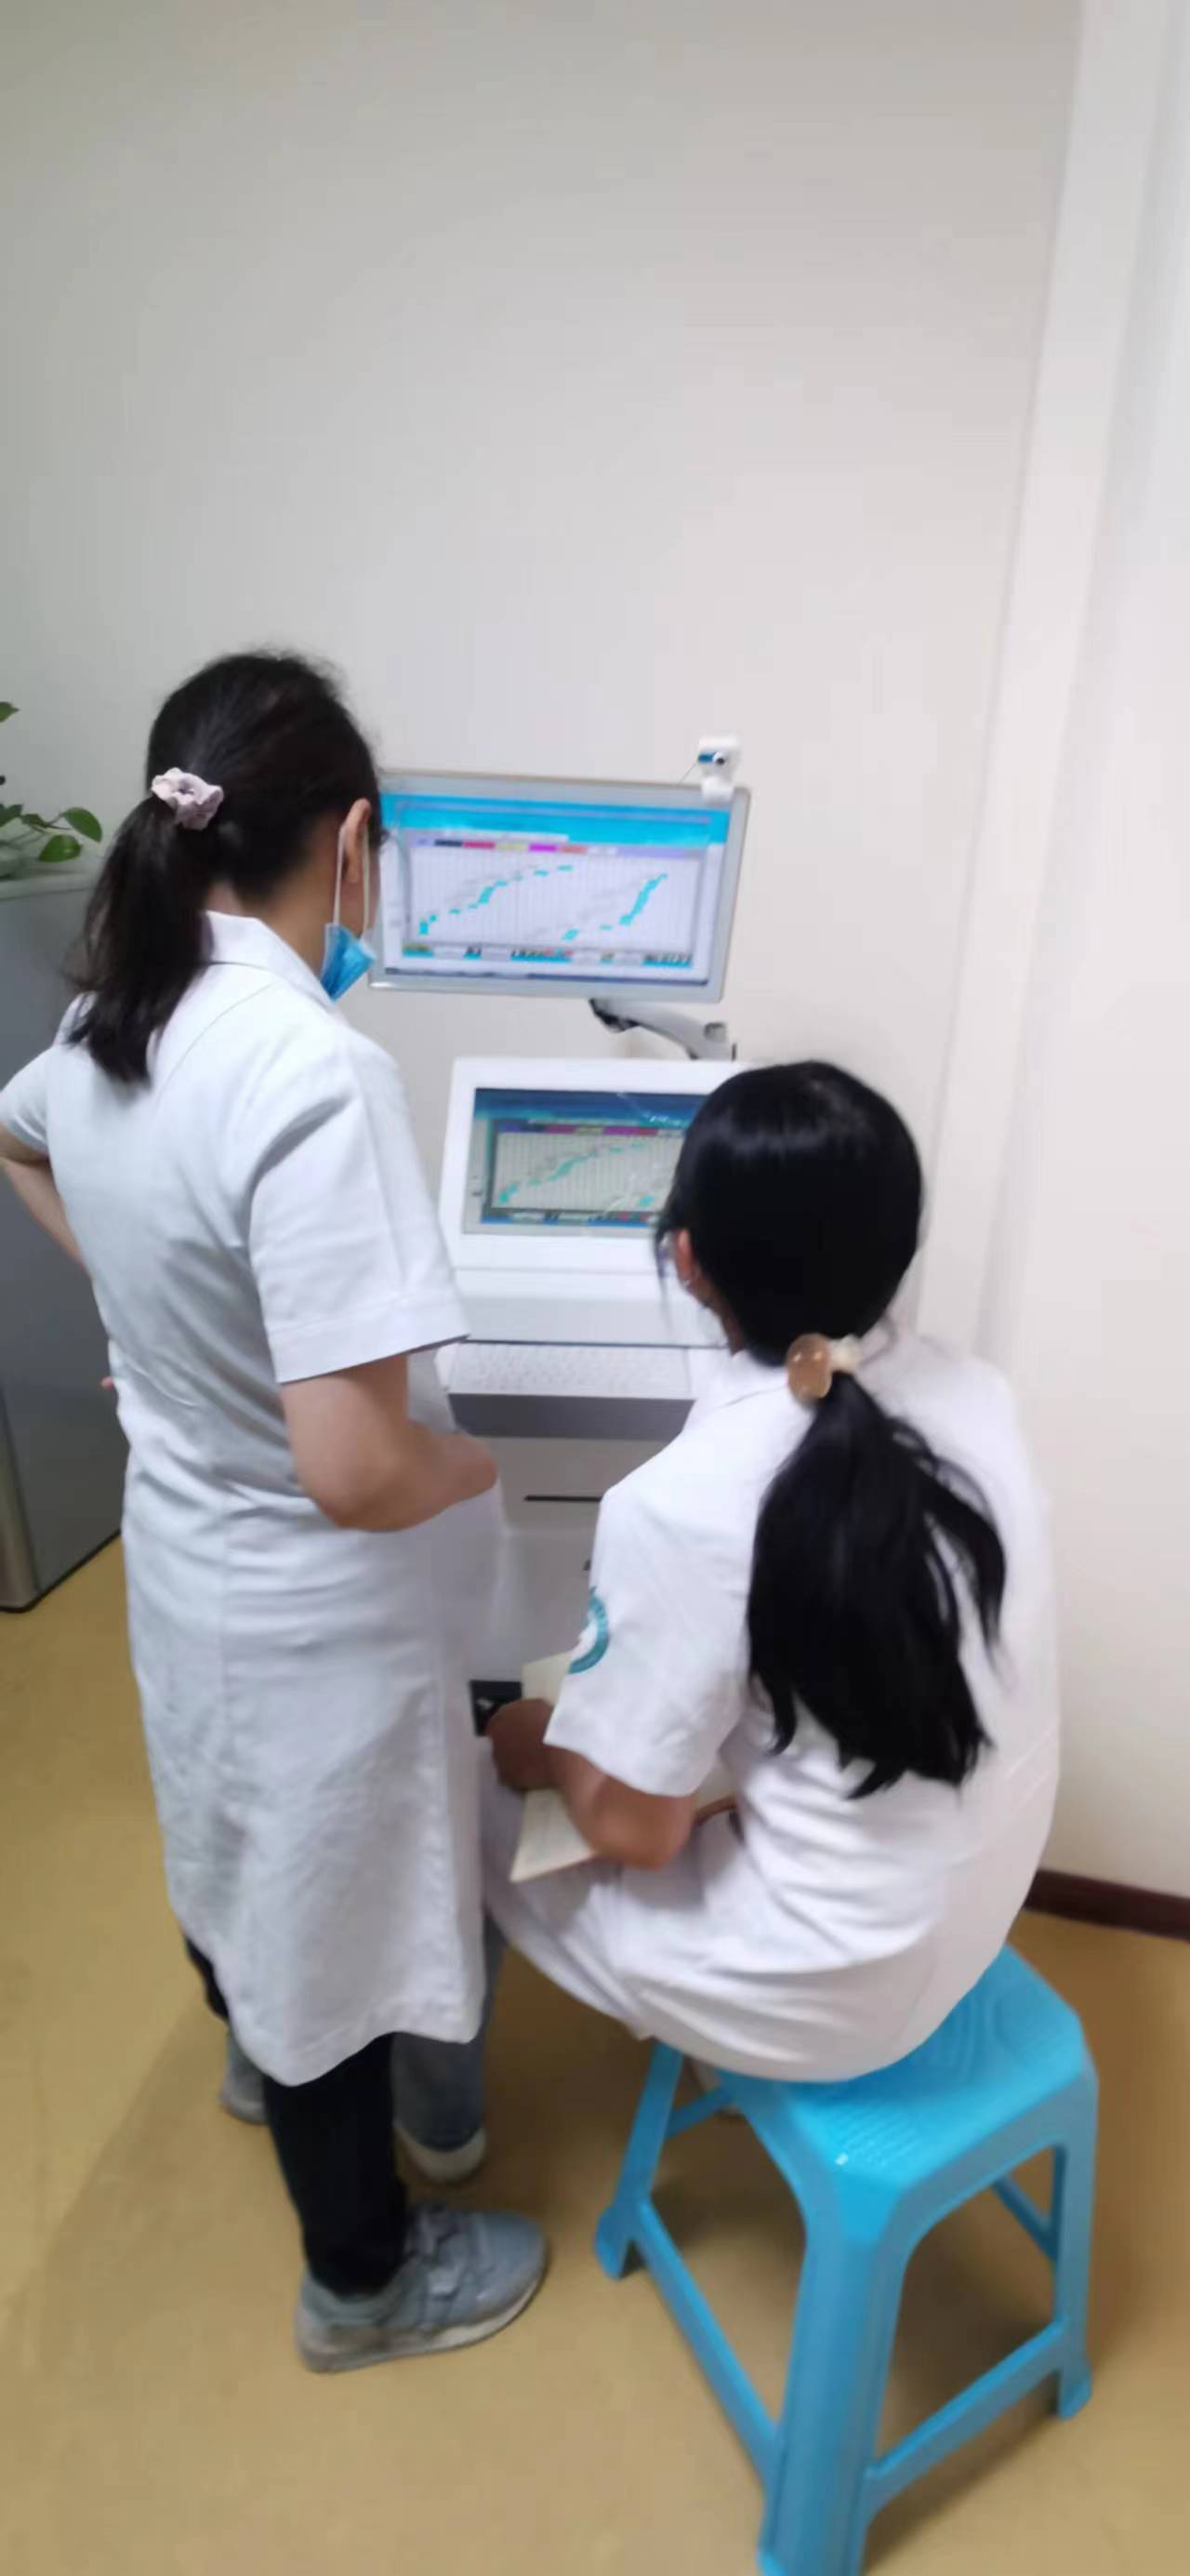 重庆市沙坪坝区天星桥社区卫生服务中心SD-2200儿童综合素质评价系统